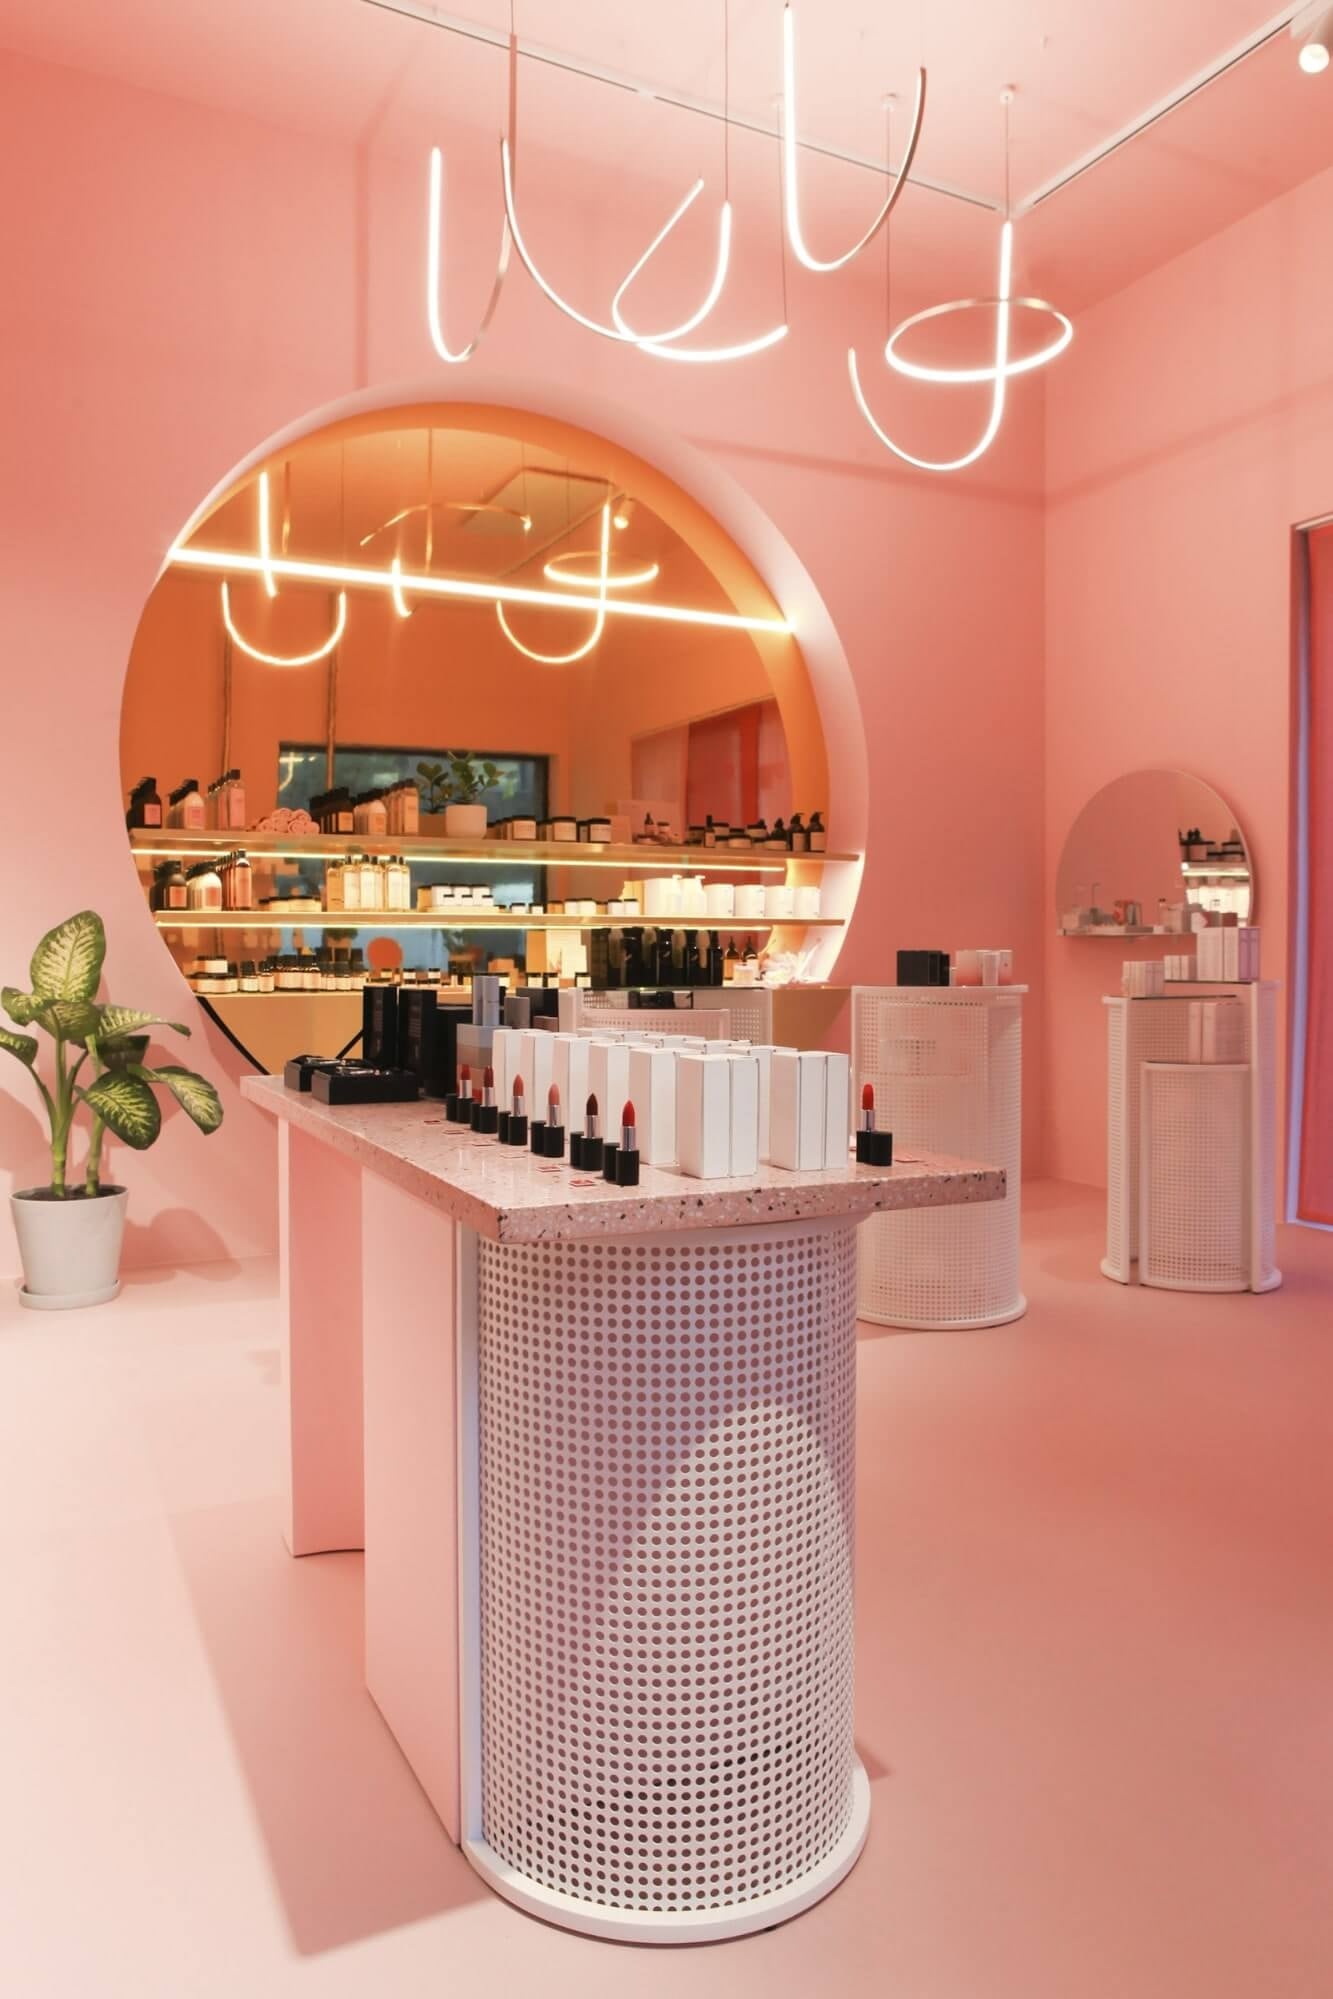 Cửa hàng mỹ phẩm sử dụng gam màu hồng nhẹ cho thiết kế